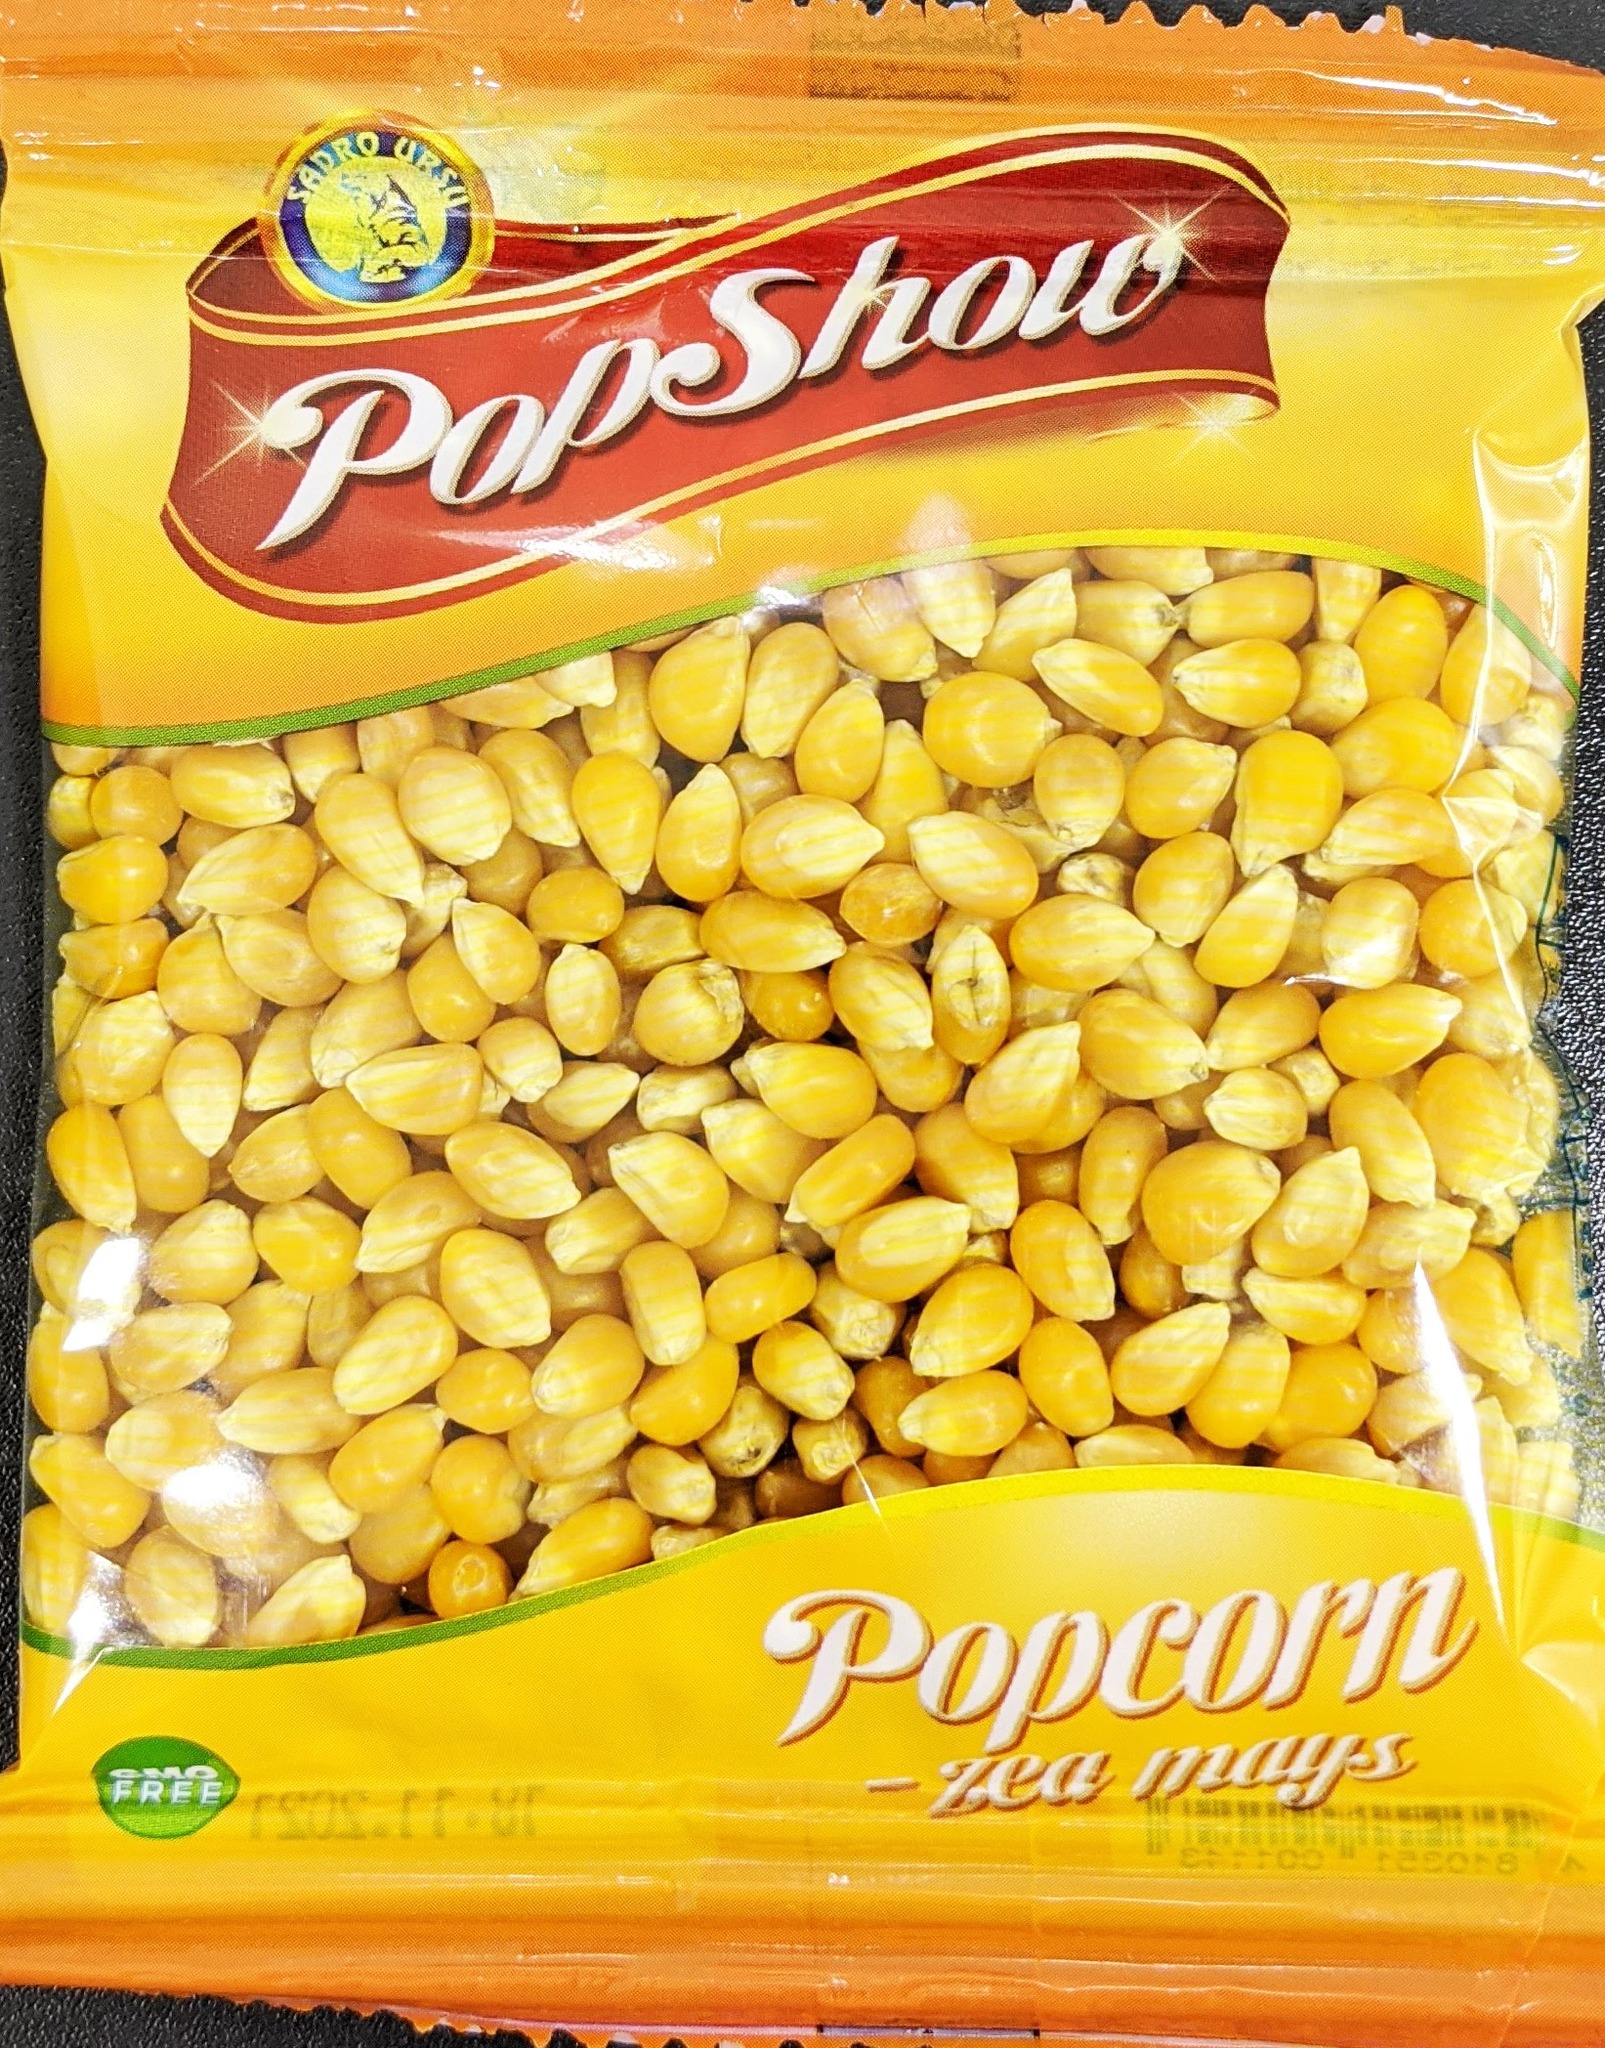 FOTO Pesticide în porumb pentru popcorn. Producătorul, obligat să retragă produsul din magazine